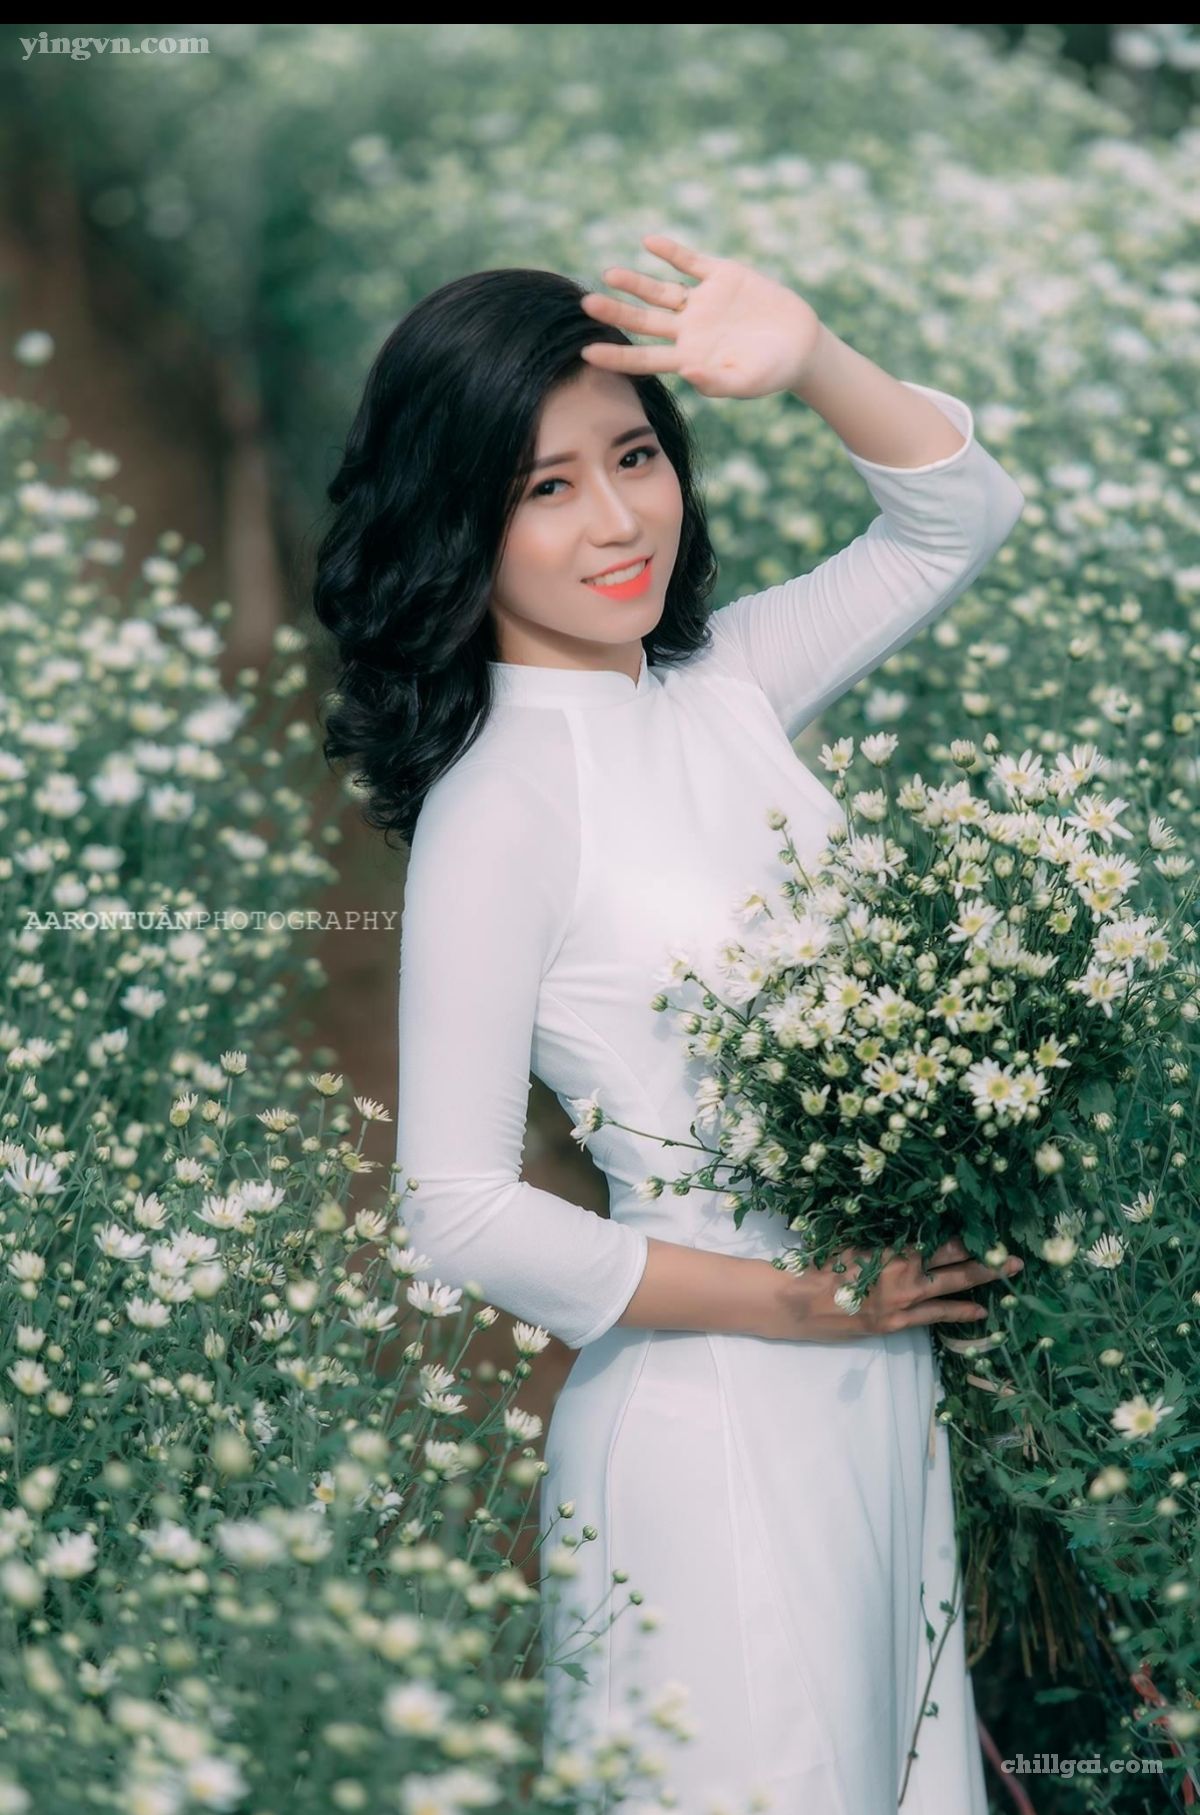 Tuyển tập girl xinh gái đẹp Việt Nam mặc áo dài đẹp mê hồn #169